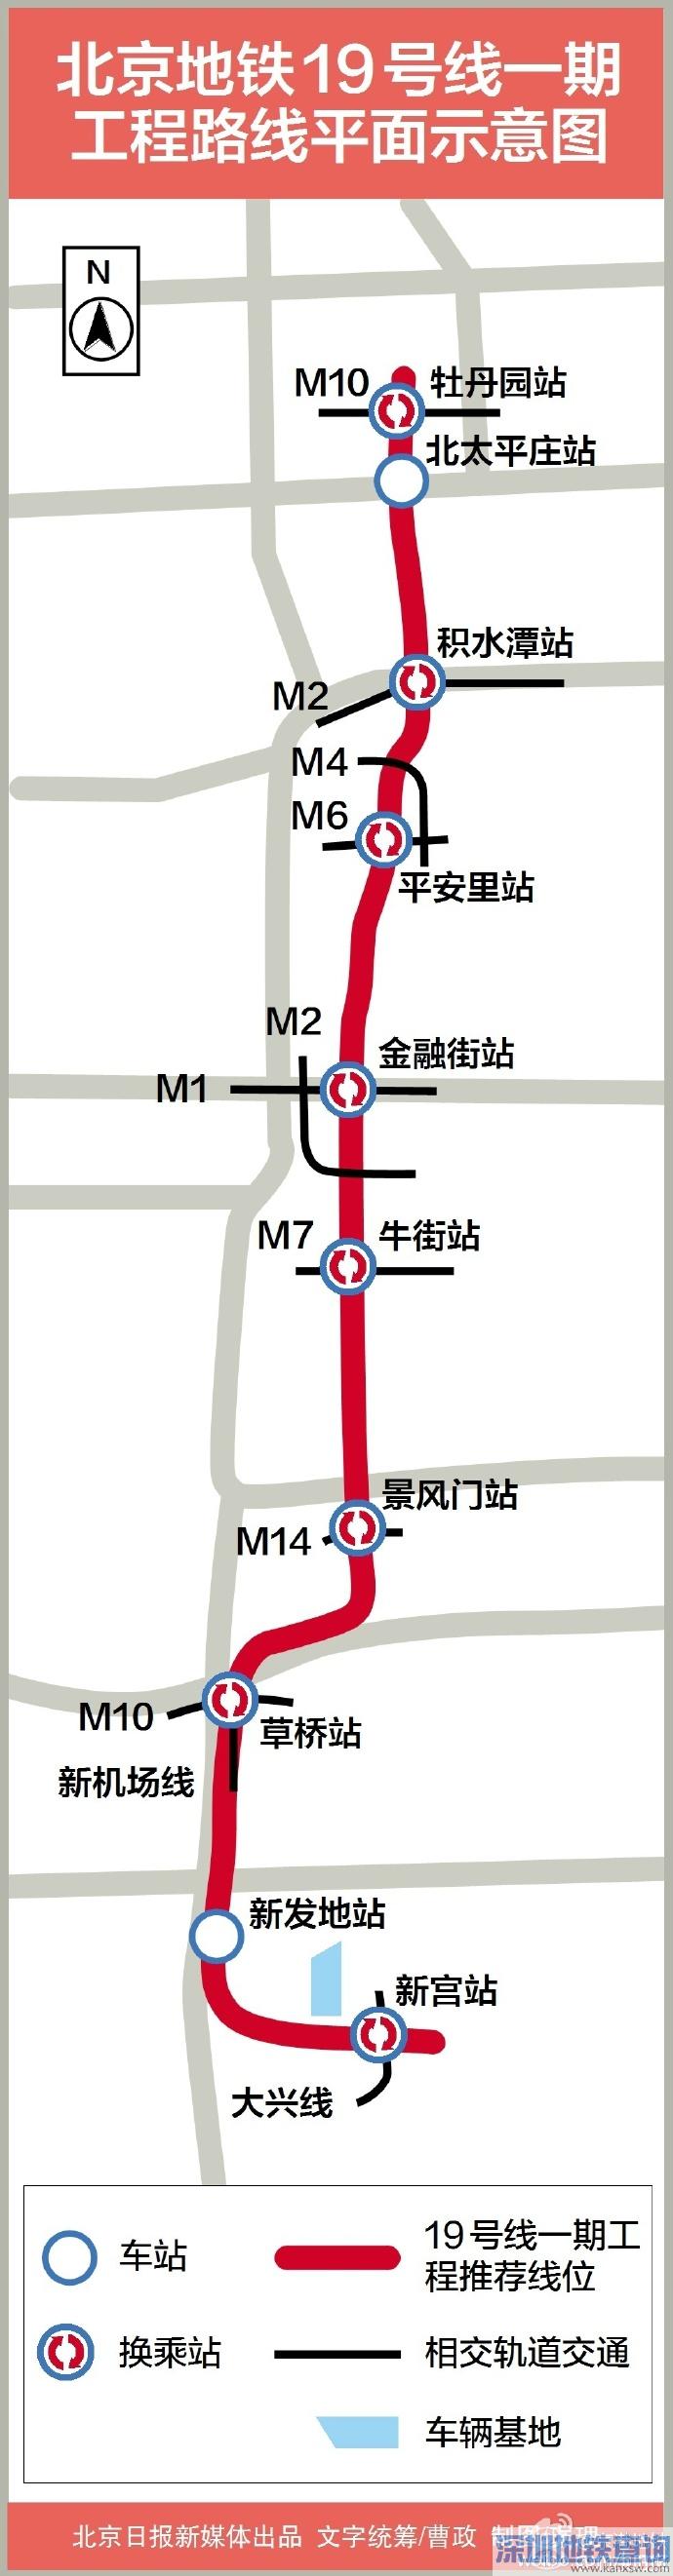 北京地铁19号线一期有哪些站点 在哪站可以换乘(平面示意图)